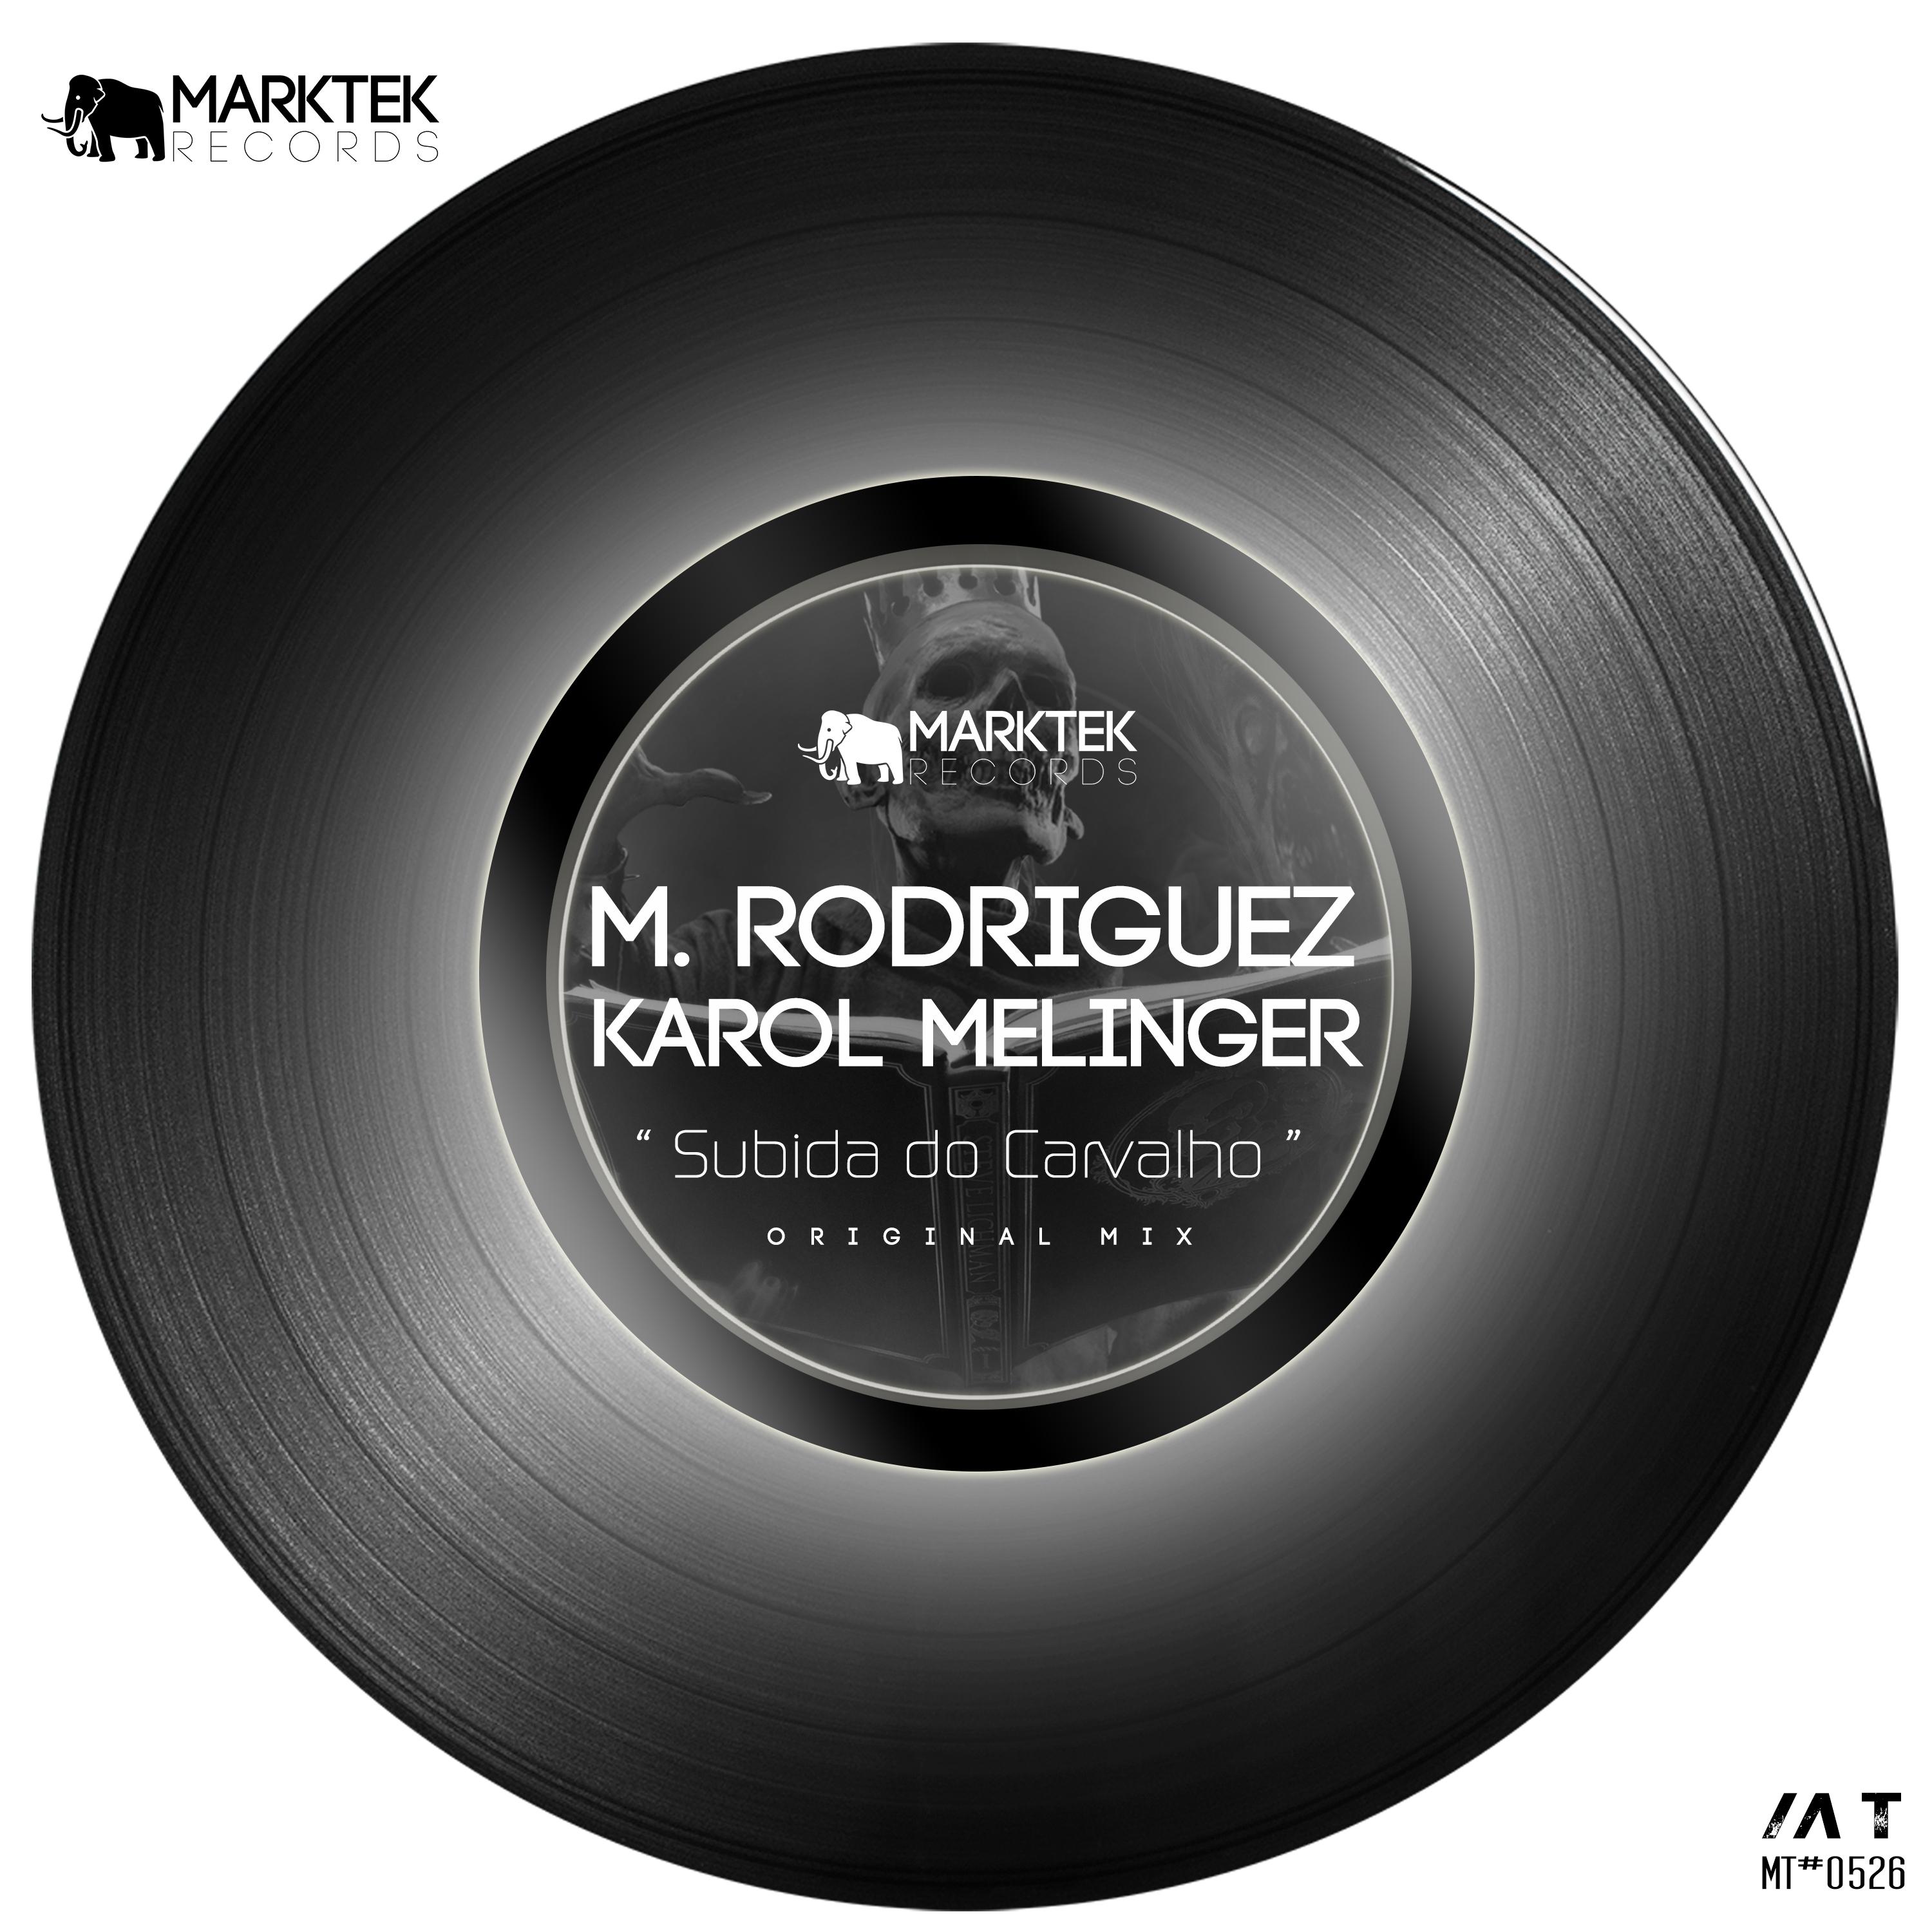 M. Rodriguez - Subida do Carvalho